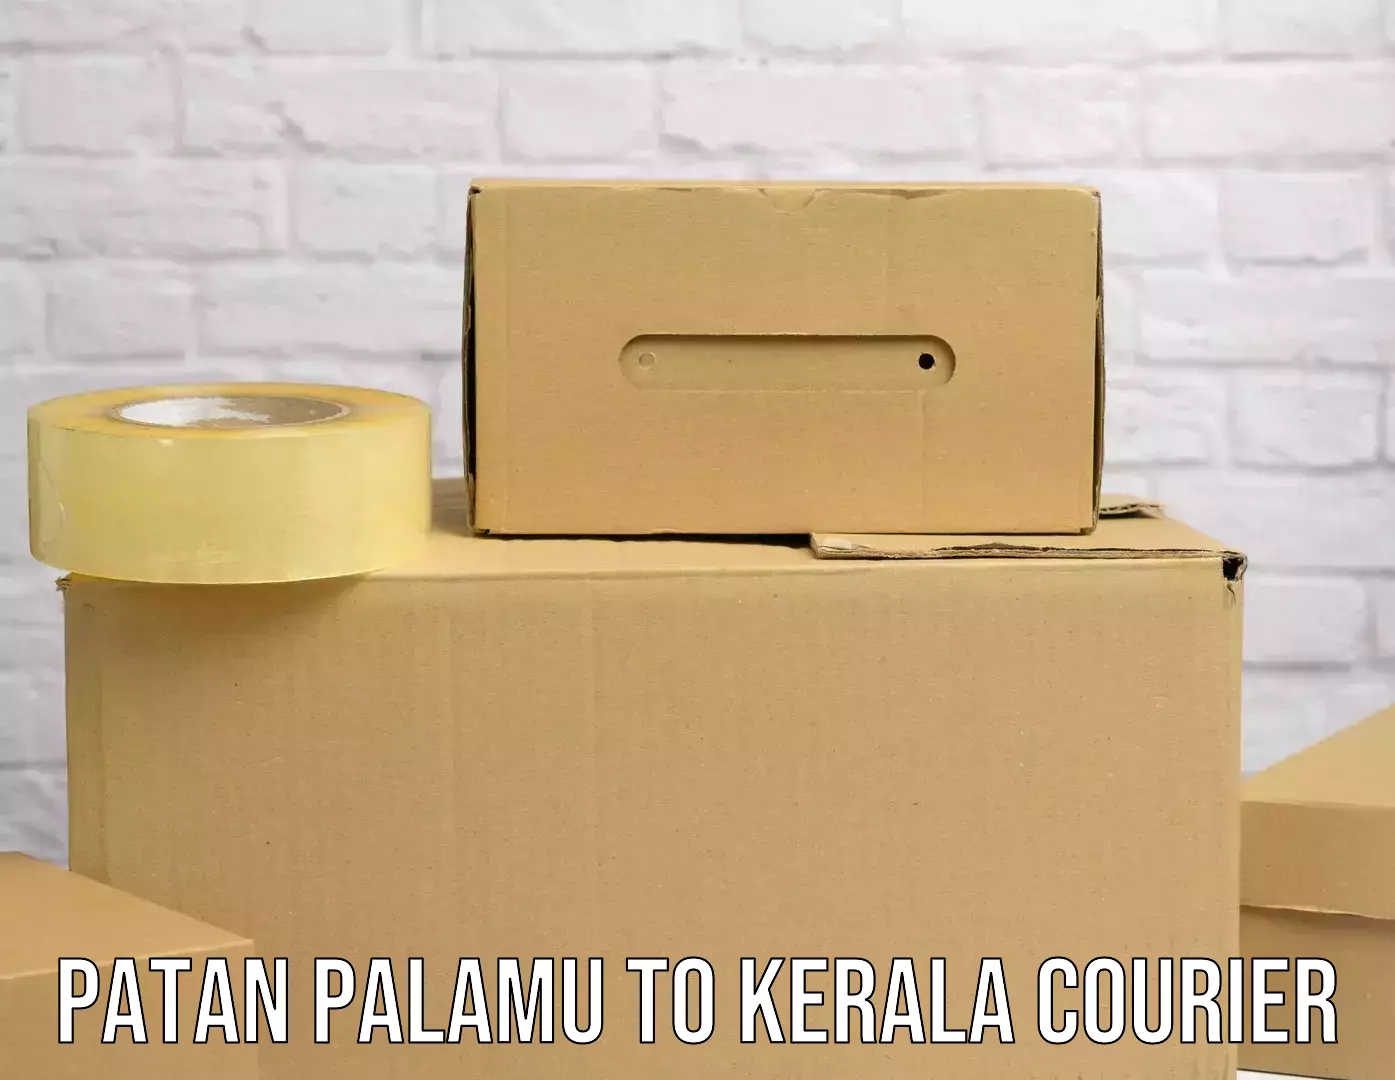 Next-day freight services Patan Palamu to Cochin Port Kochi